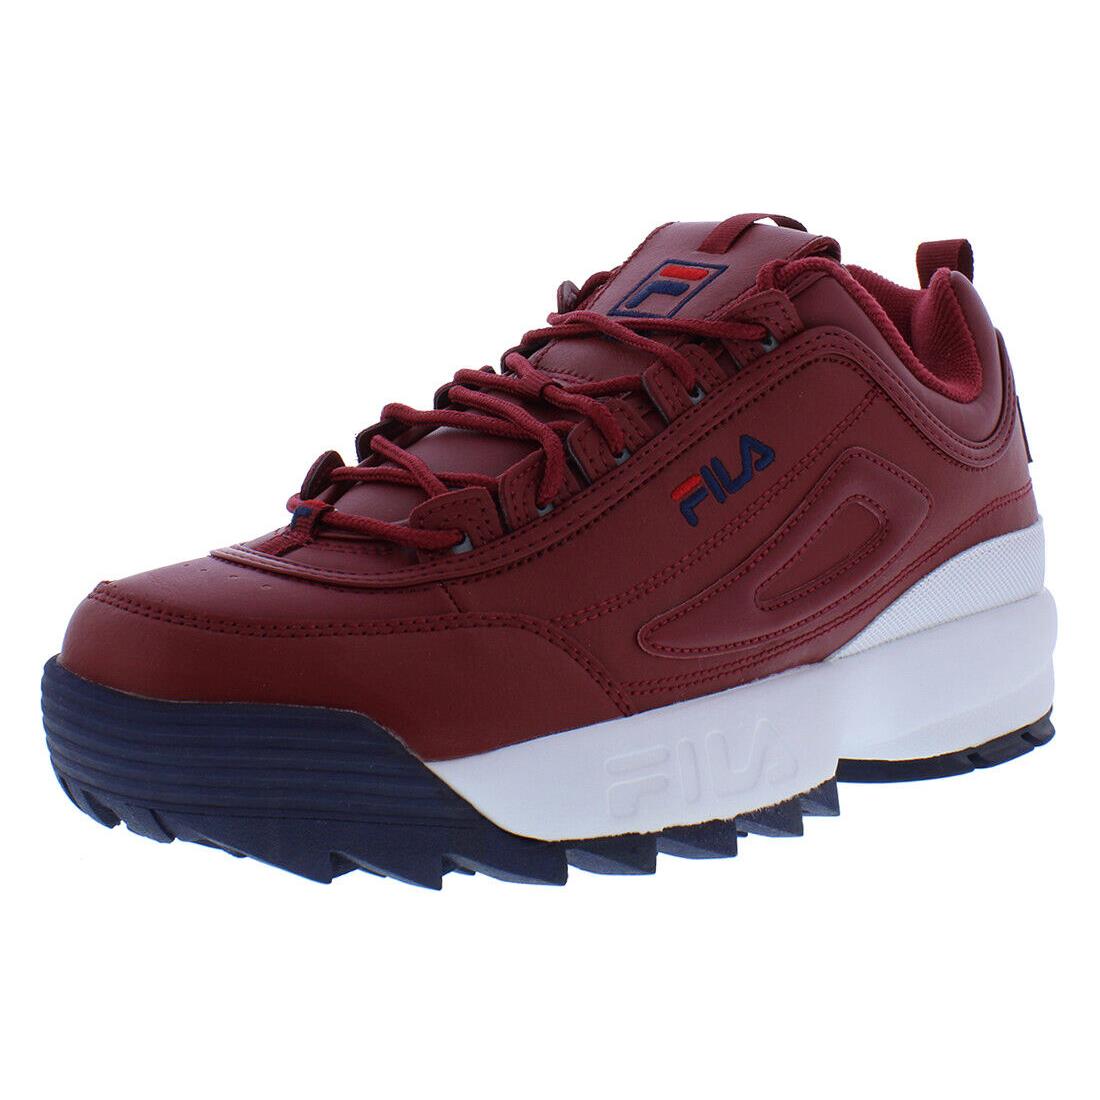 Fila Disruptor II Premium Mens Shoes - Main: Red